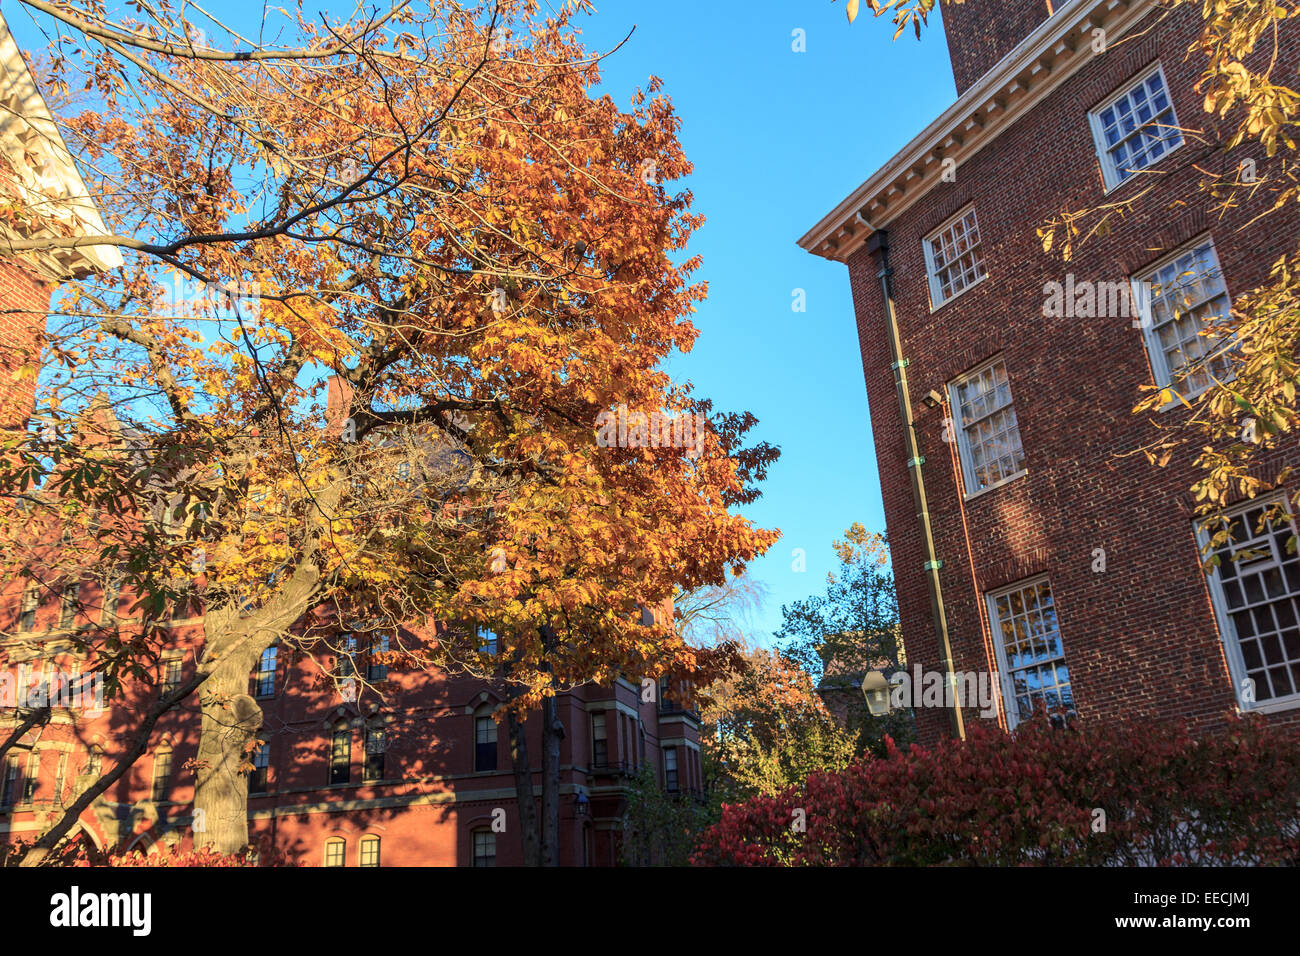 Automne feuillage coloré et historique bâtiments dortoirs sur le campus de l'Université de Harvard à Cambridge, MA, USA. Banque D'Images